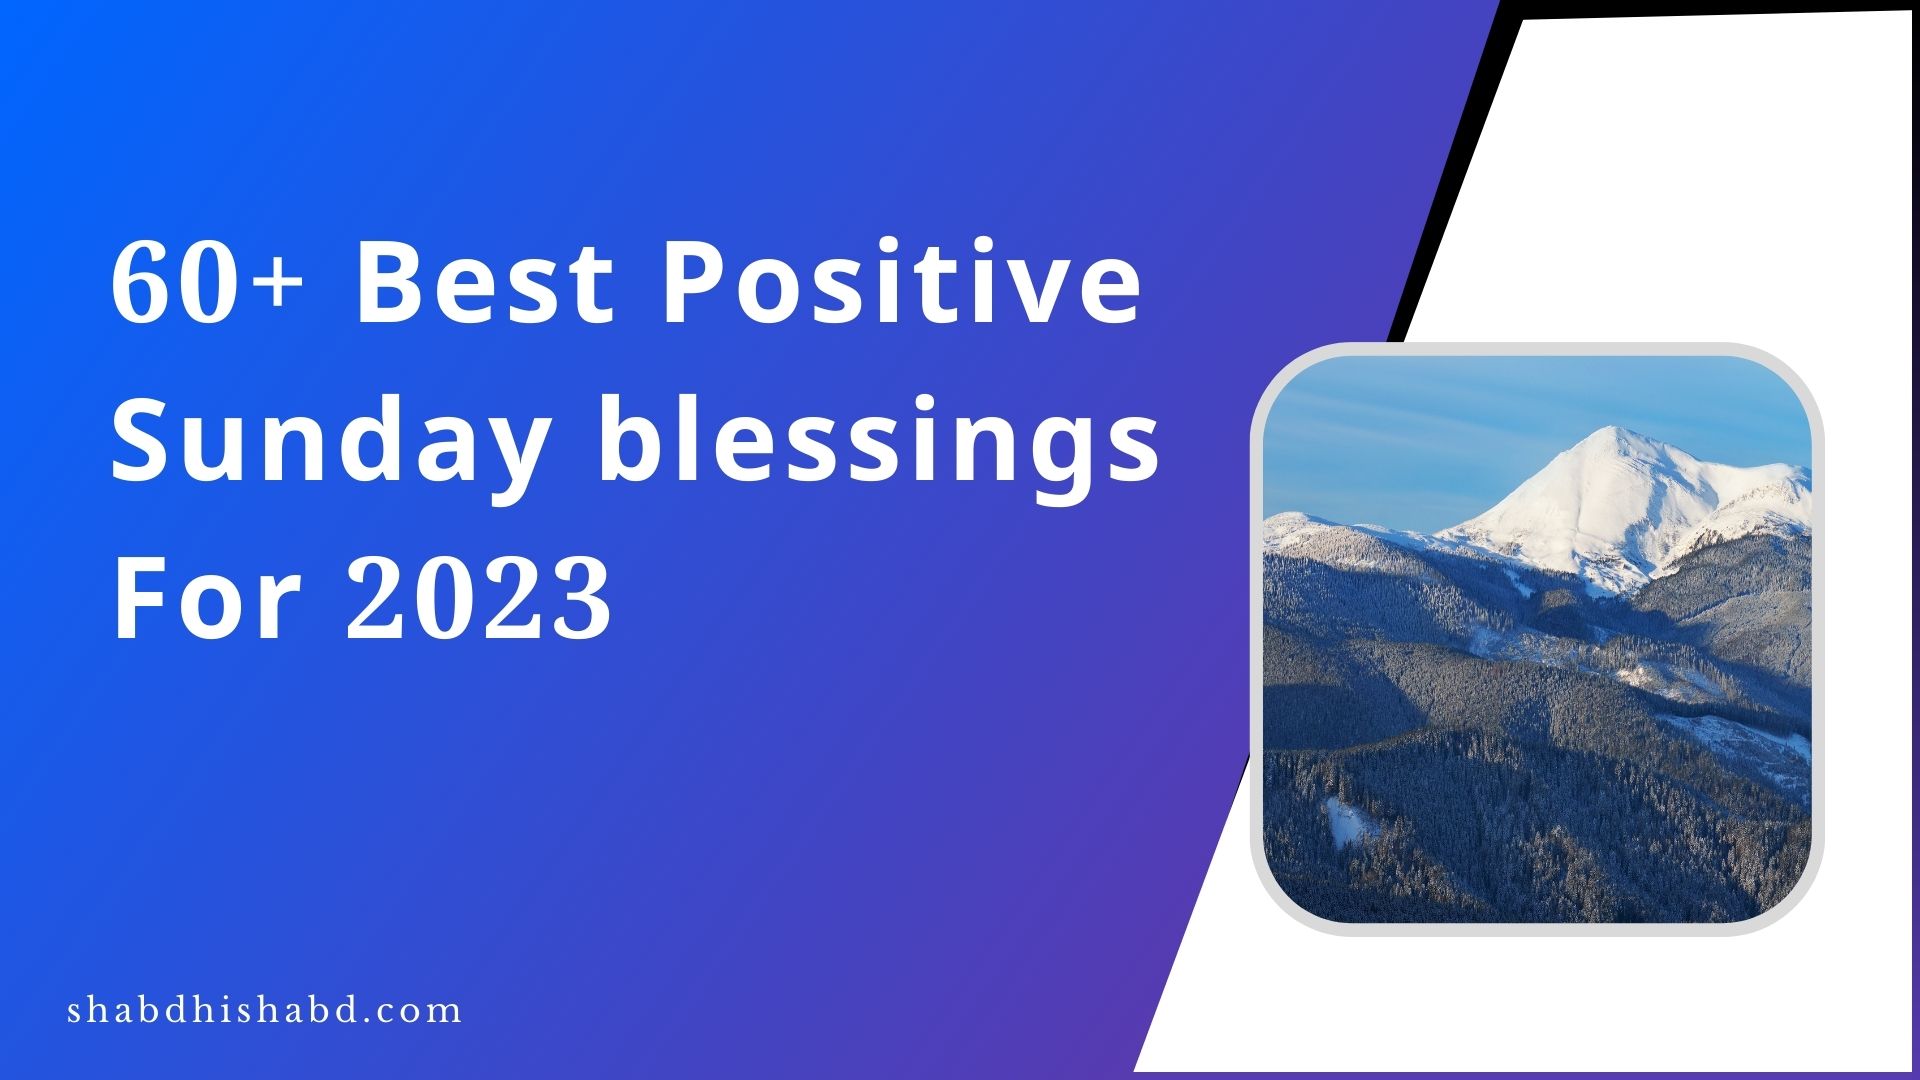 60+ Best Positive Sunday blessings For 2023